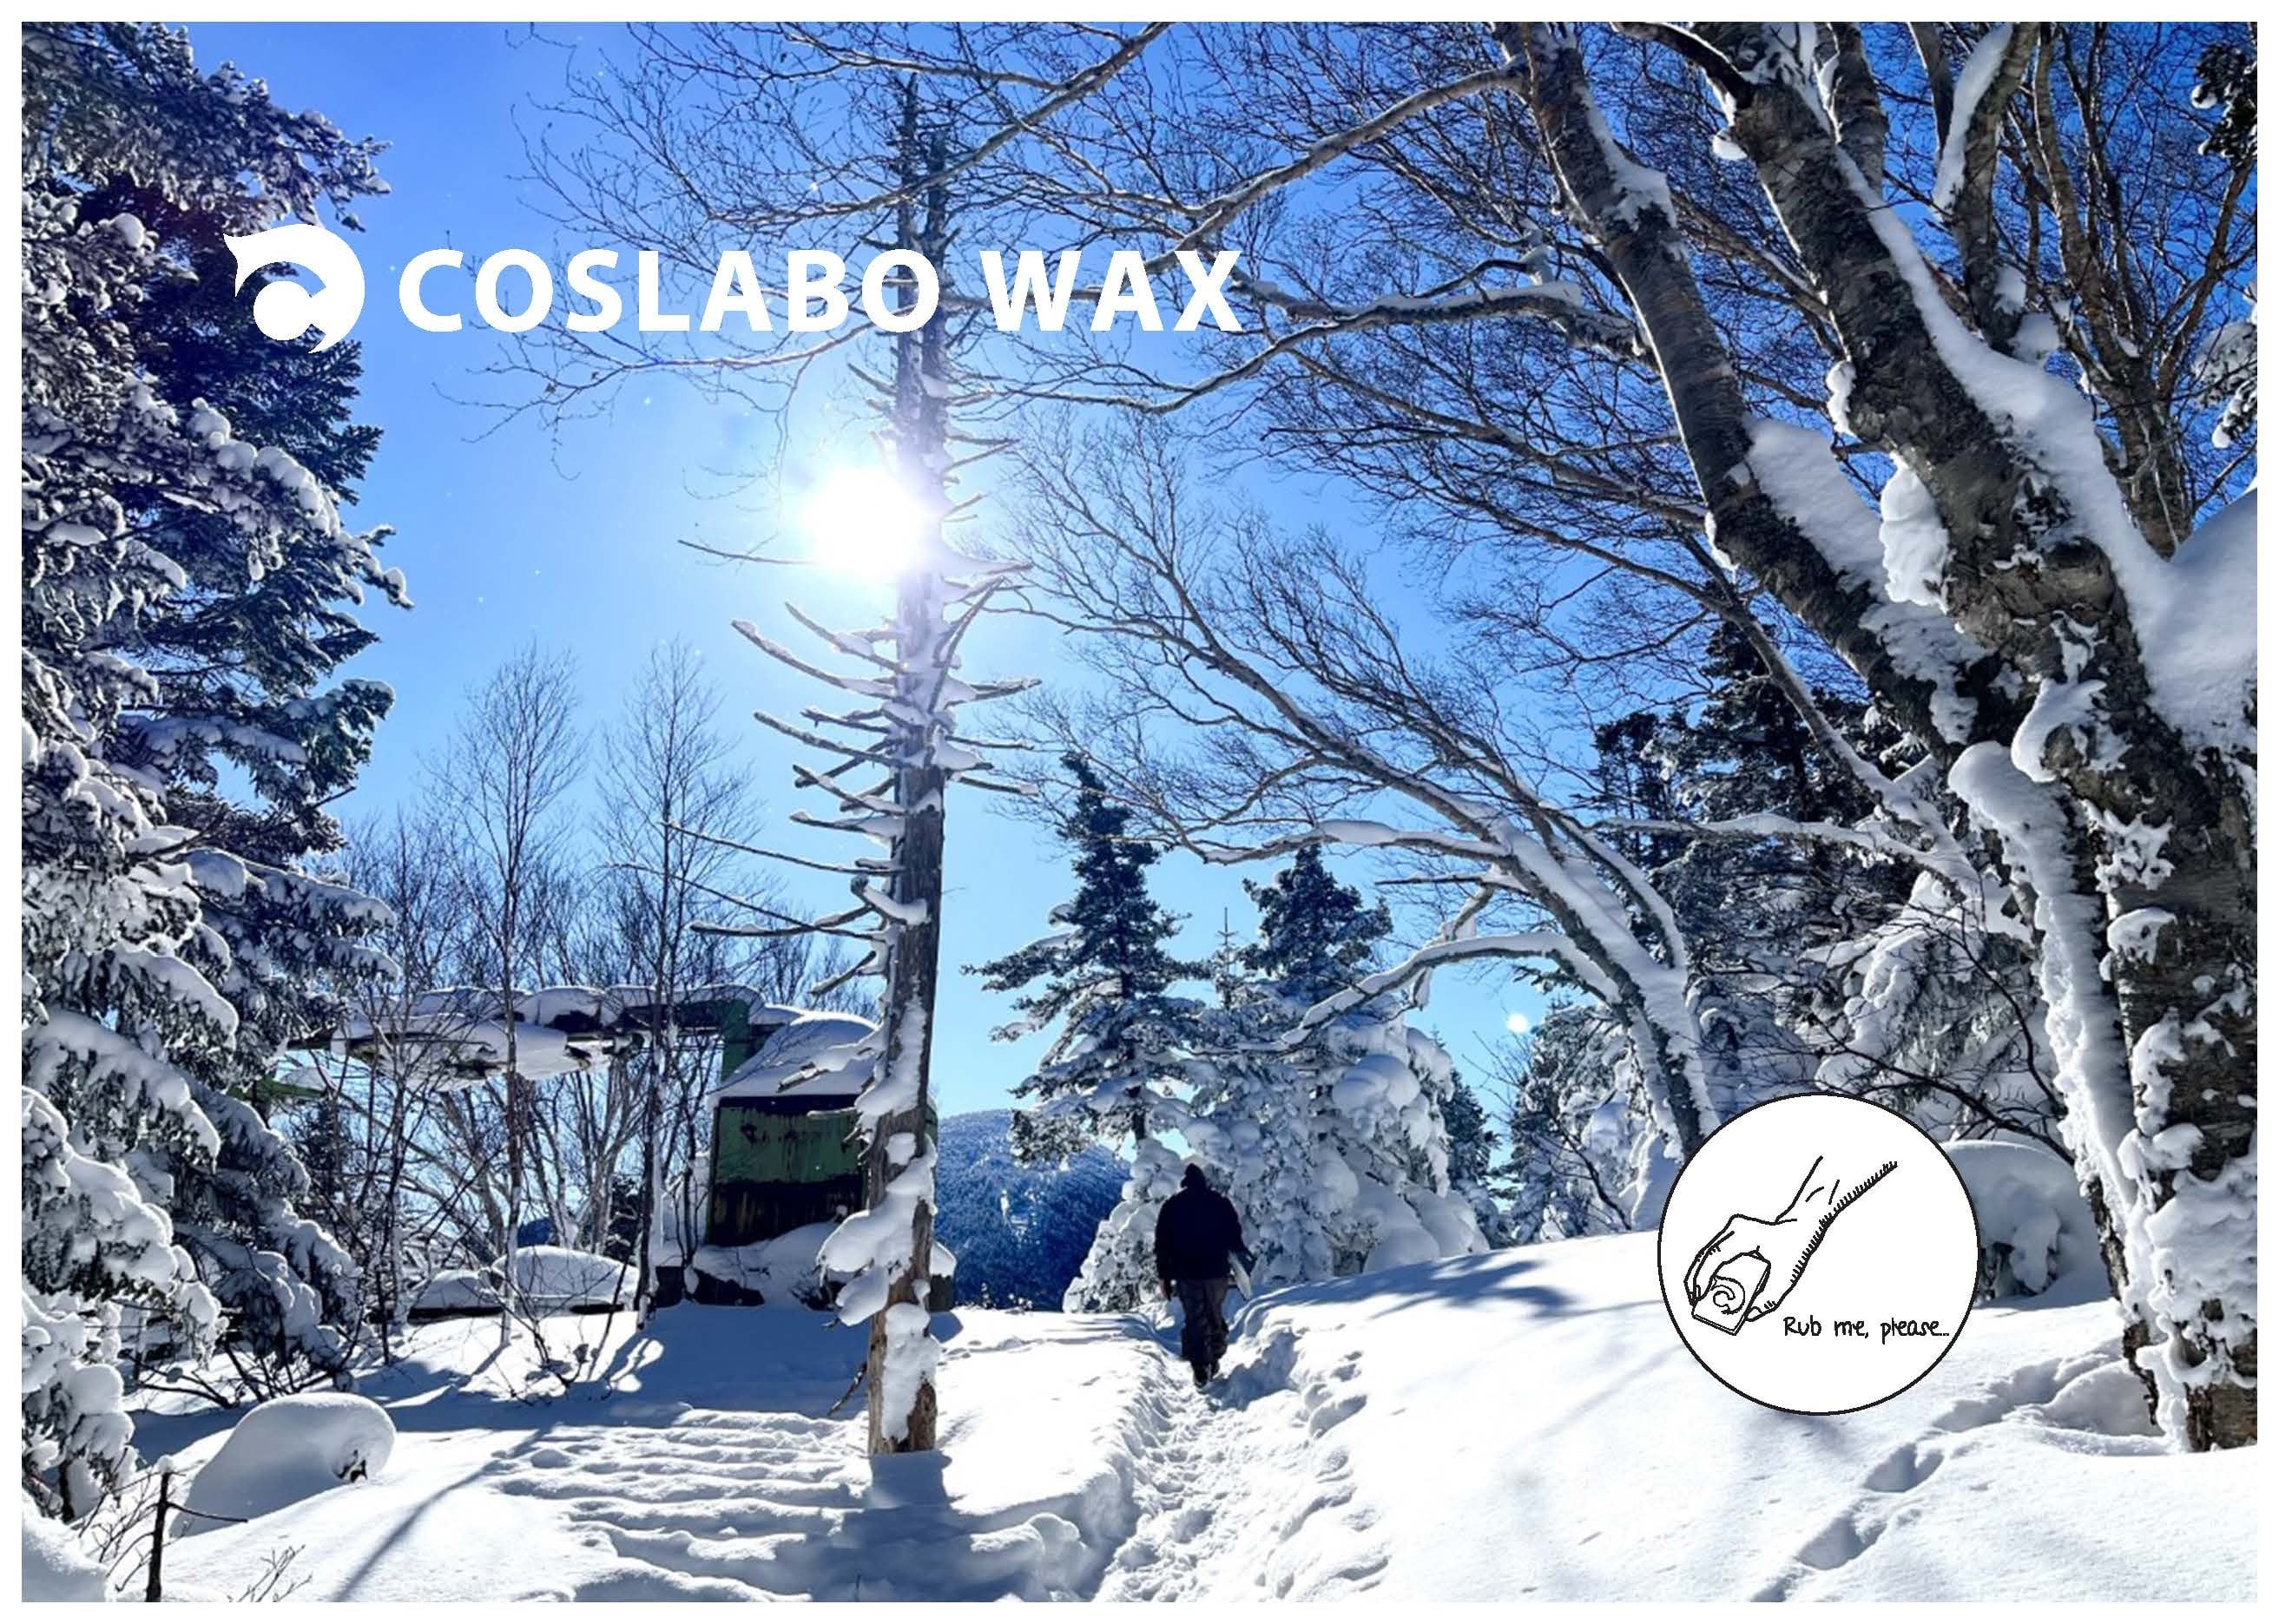 coslabo wax